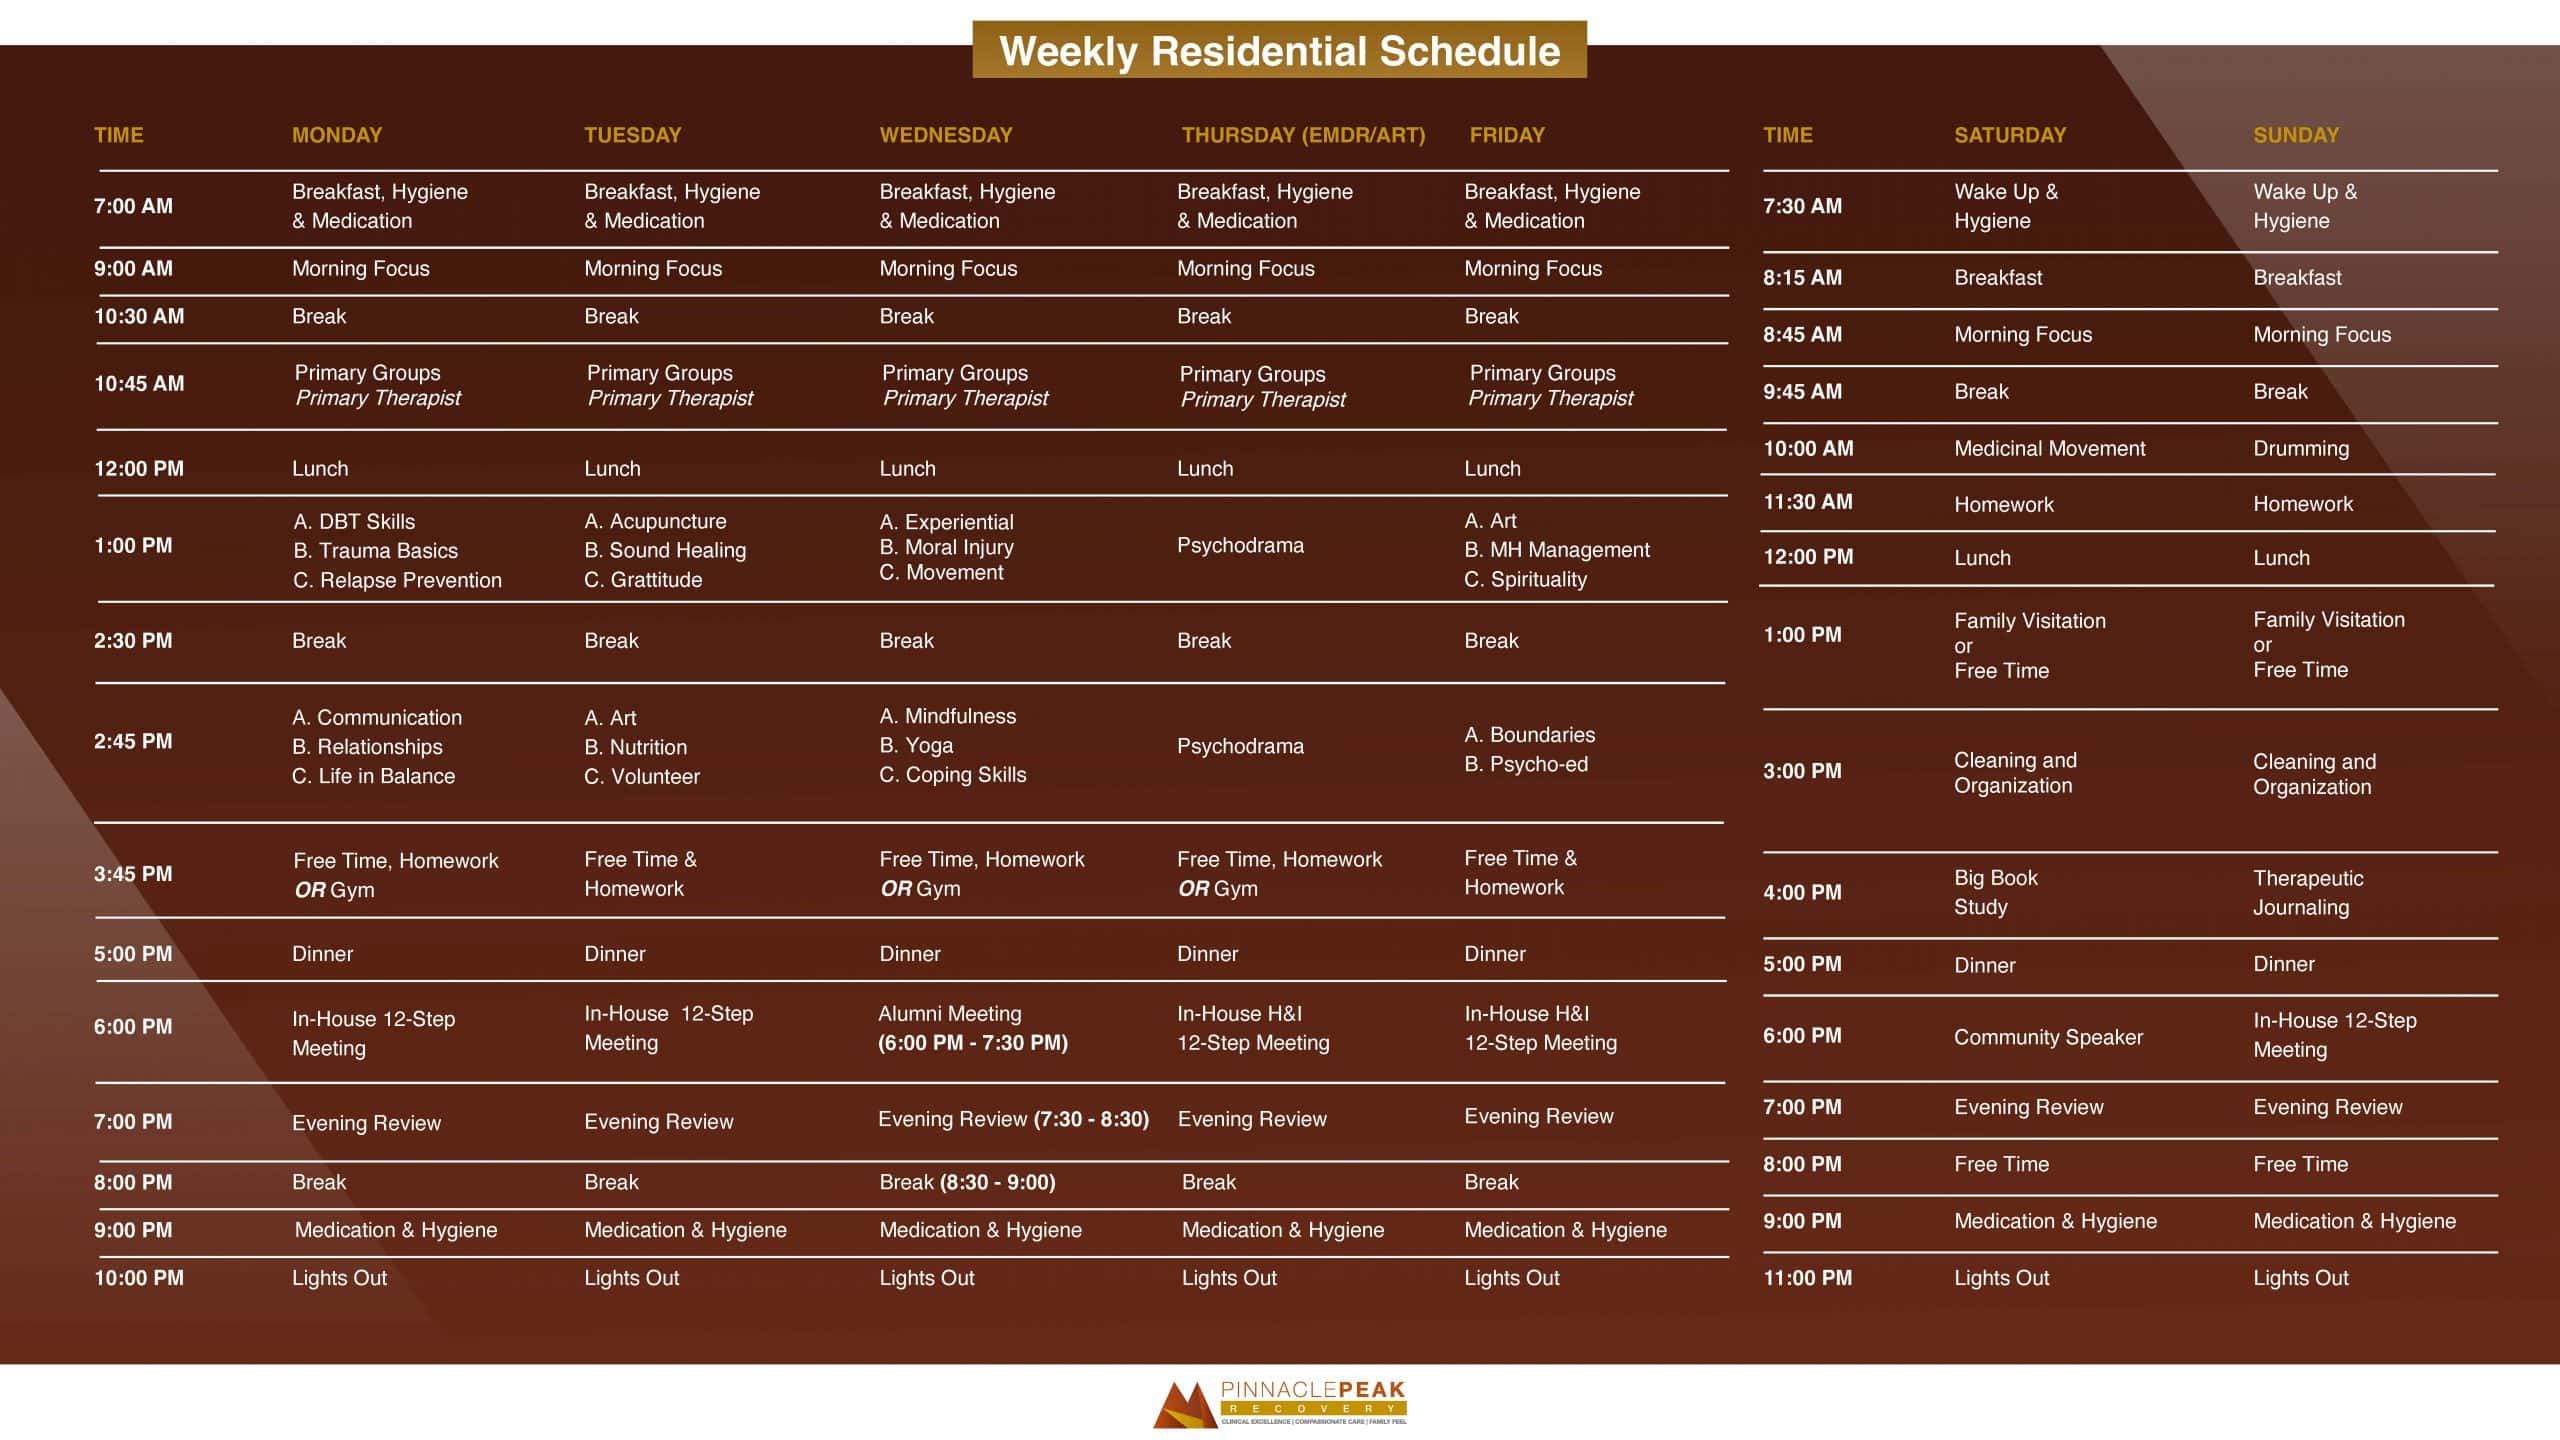 Weekly Residential Schedule